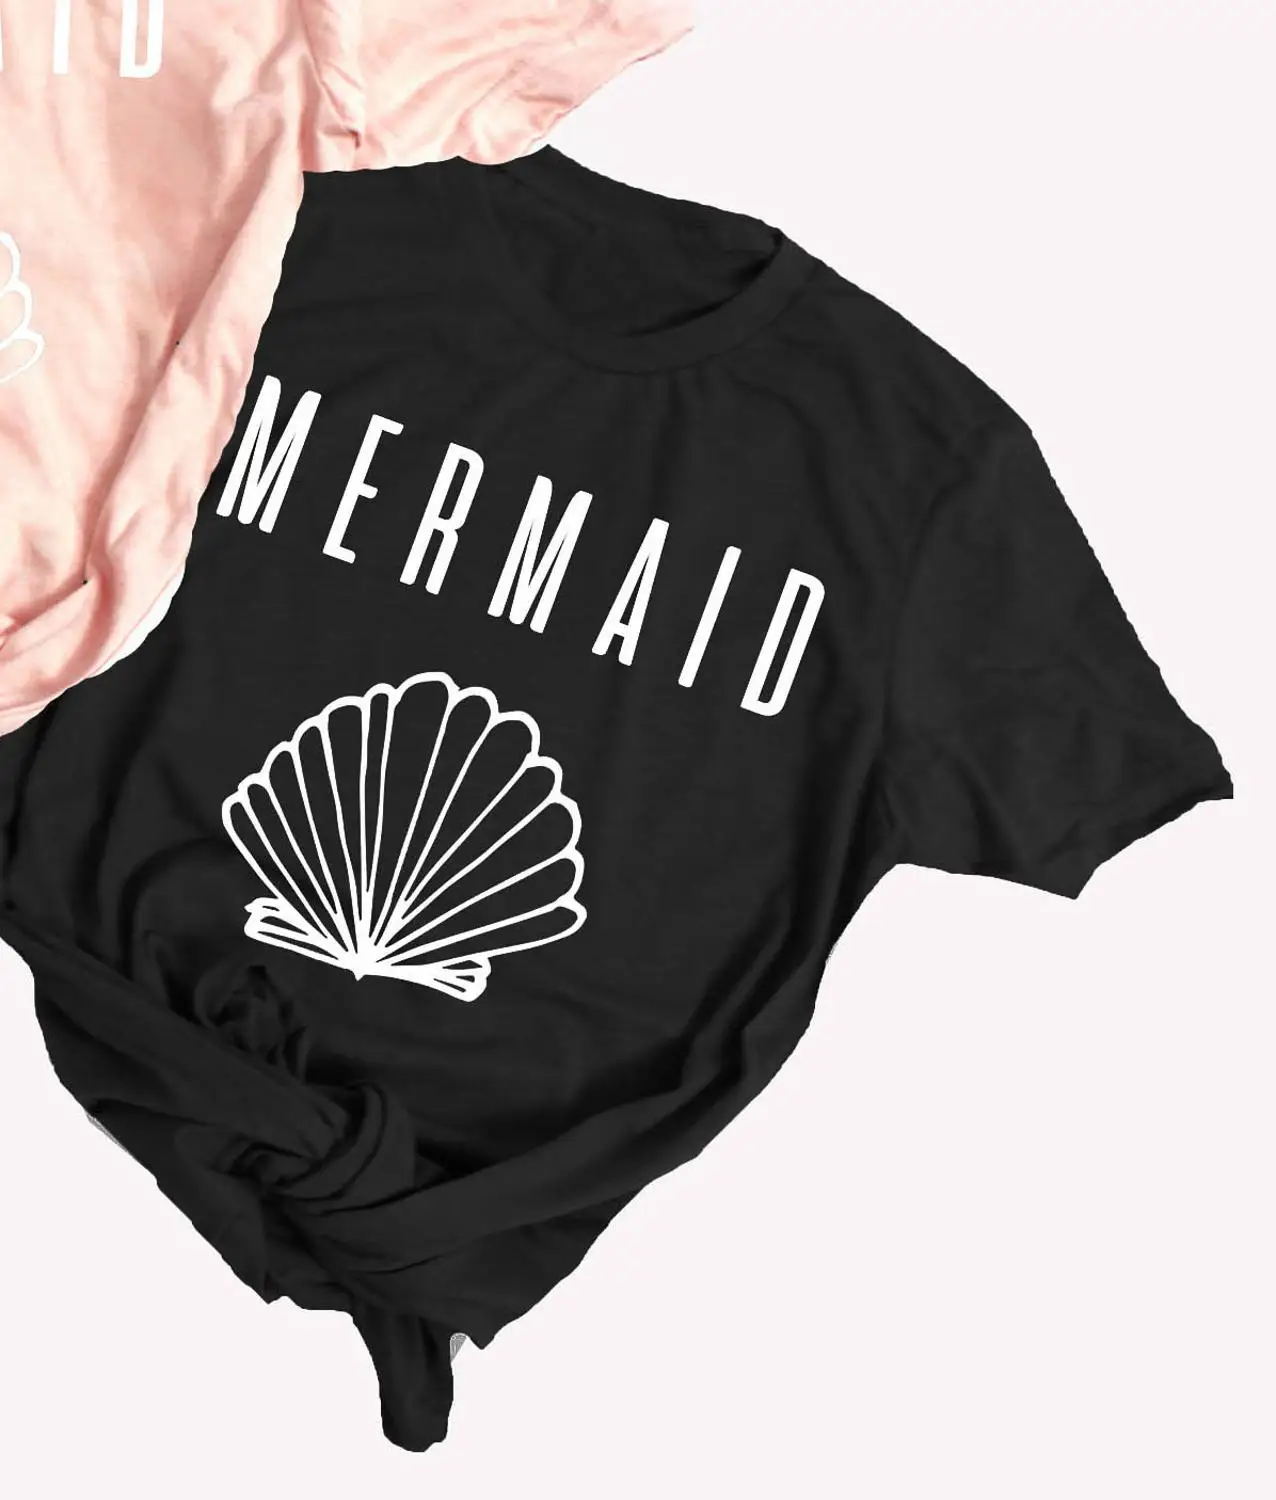 Мать жениха футболка для женщин лозунг забавные дни матери персик эстетические tumblr гранж camisetas Винтаж Цитата вечерние топы - Цвет: Black - mermaid